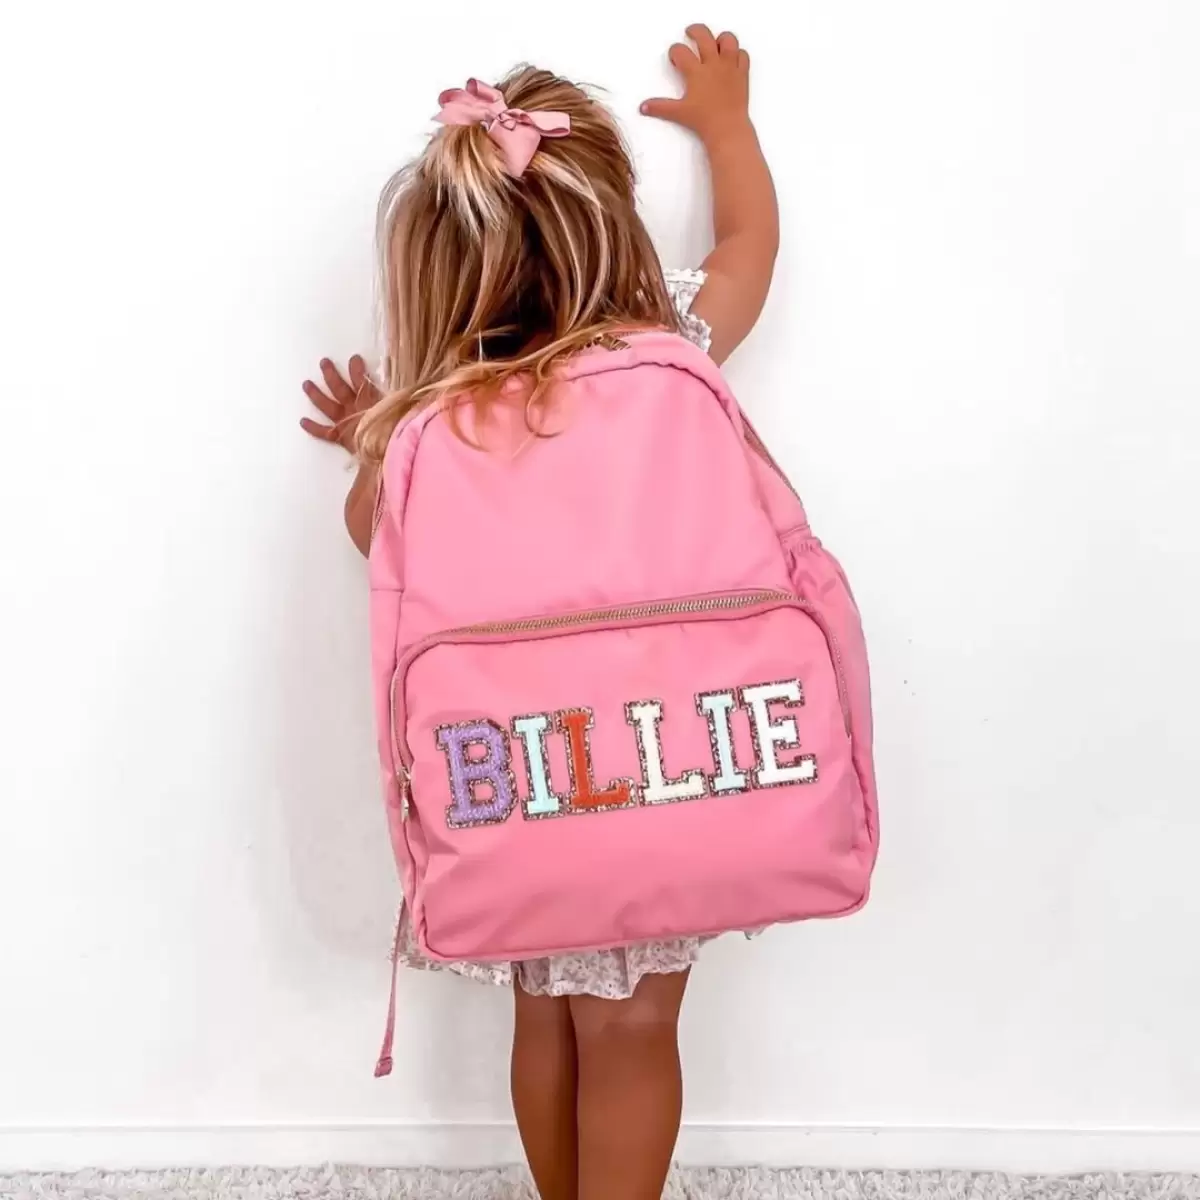 Best Toddler Backpacks for Preschool for 2023